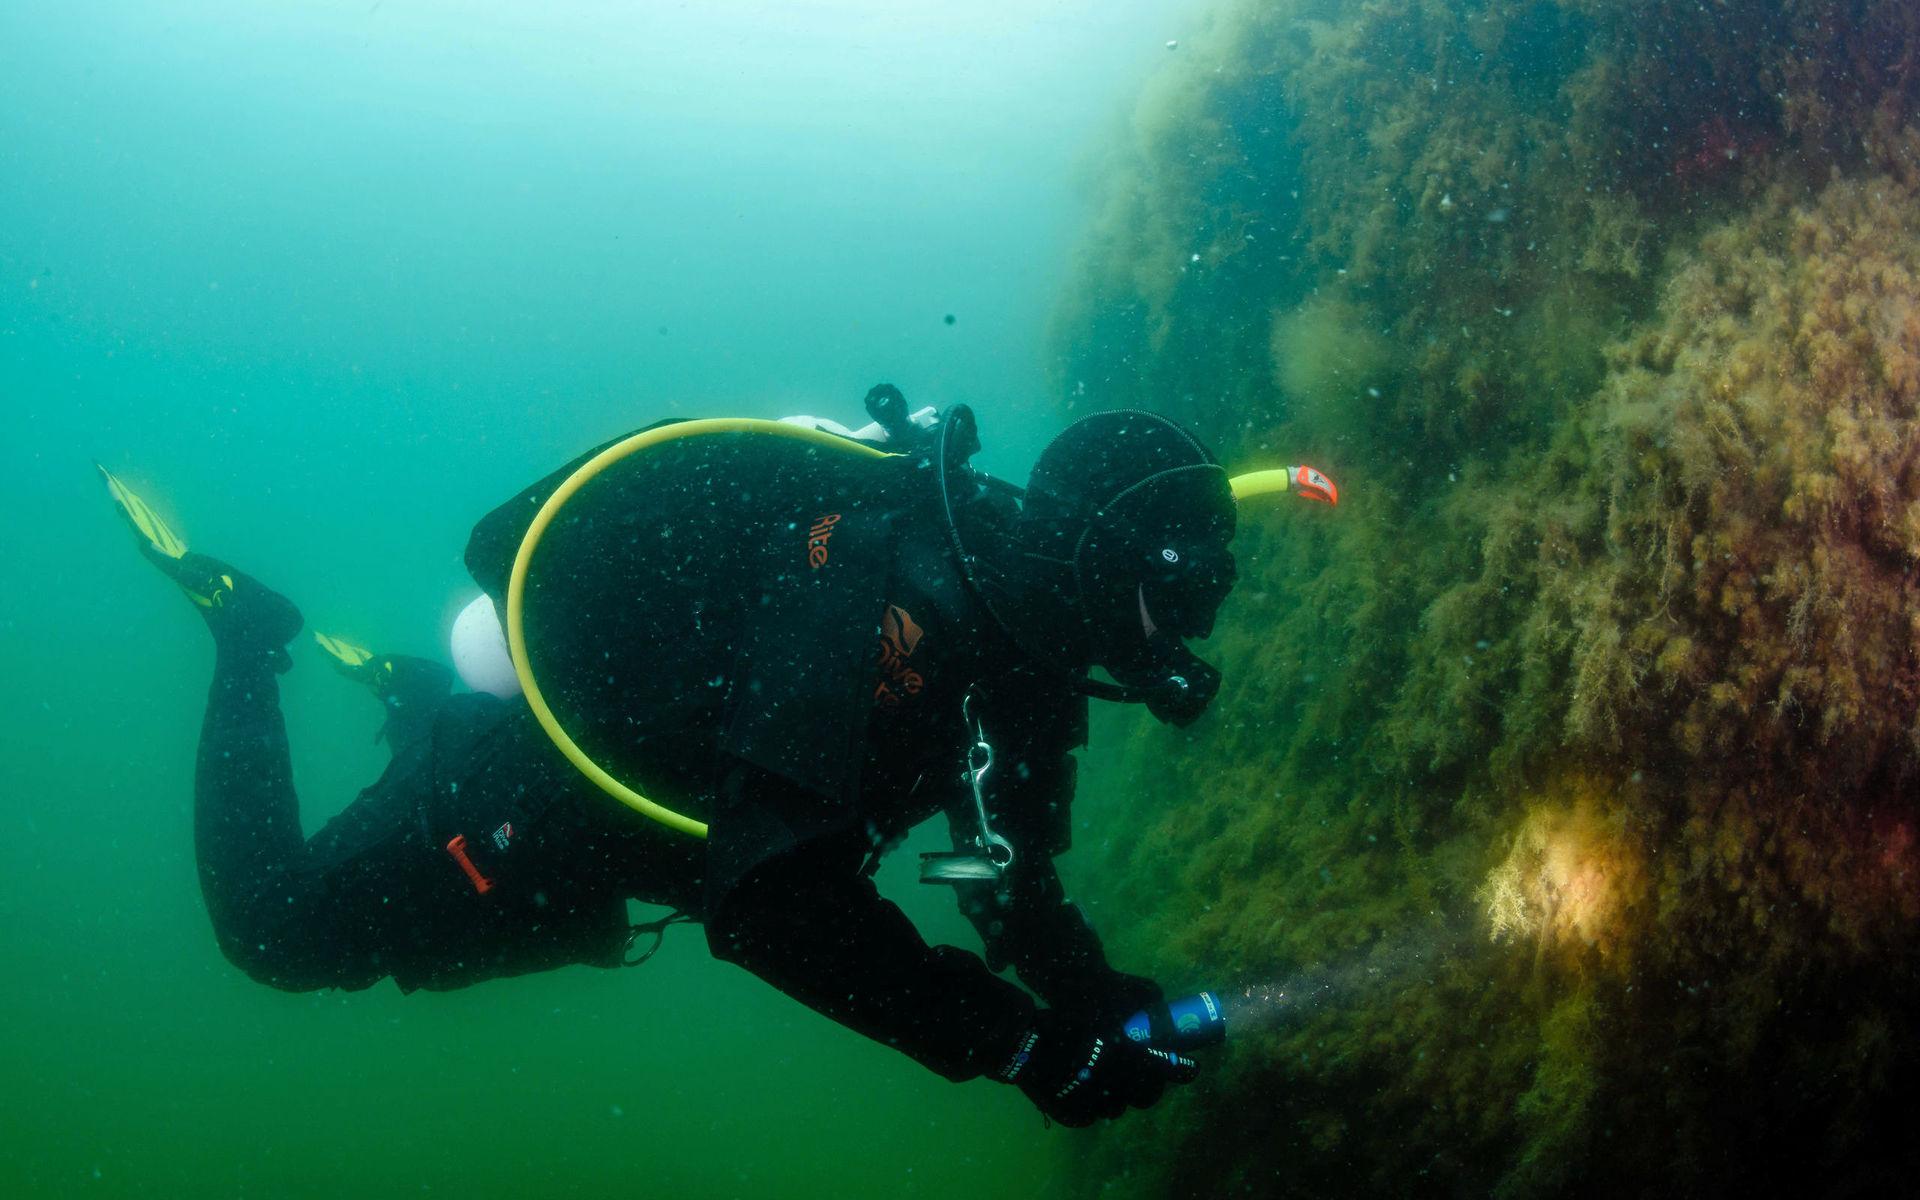 Första dyket – efter 20 års uppehåll – visade en dramatisk förändring i den marina miljön utanför Bohuskusten. Annette Seldén beskriver det som att hon fick en chock.